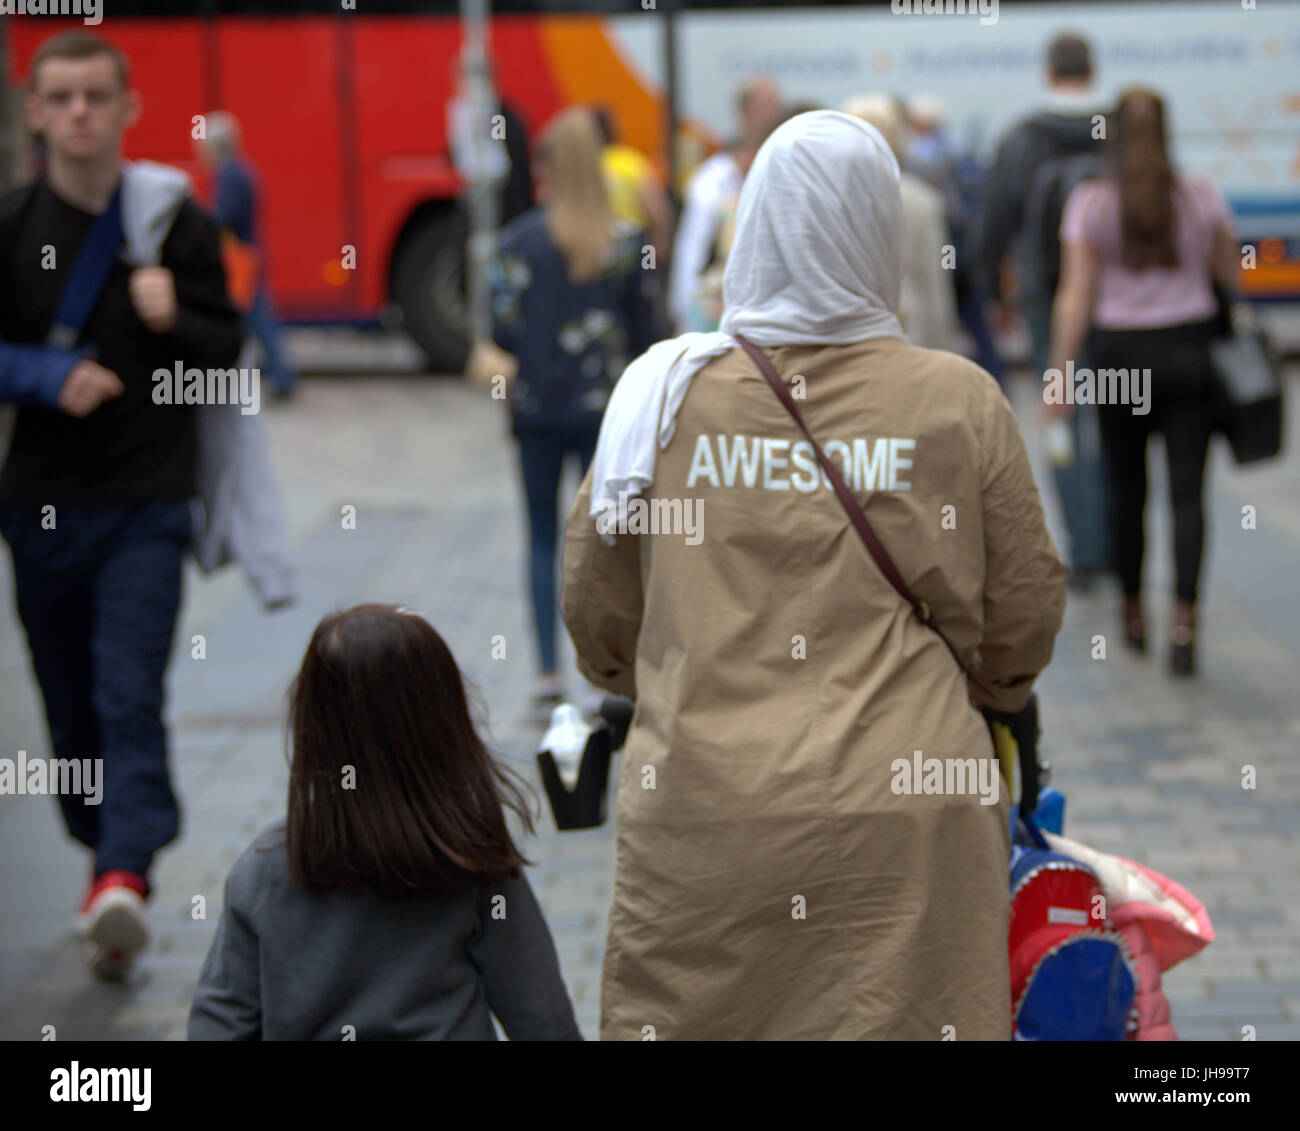 Asiatische Familie Flüchtling junge Frau Mädchen Schüler Schüler gekleidet Hijab Schal auf Straße in der UK alltägliche Szene gehen auf der Straße genial auf Rückseite Stockfoto